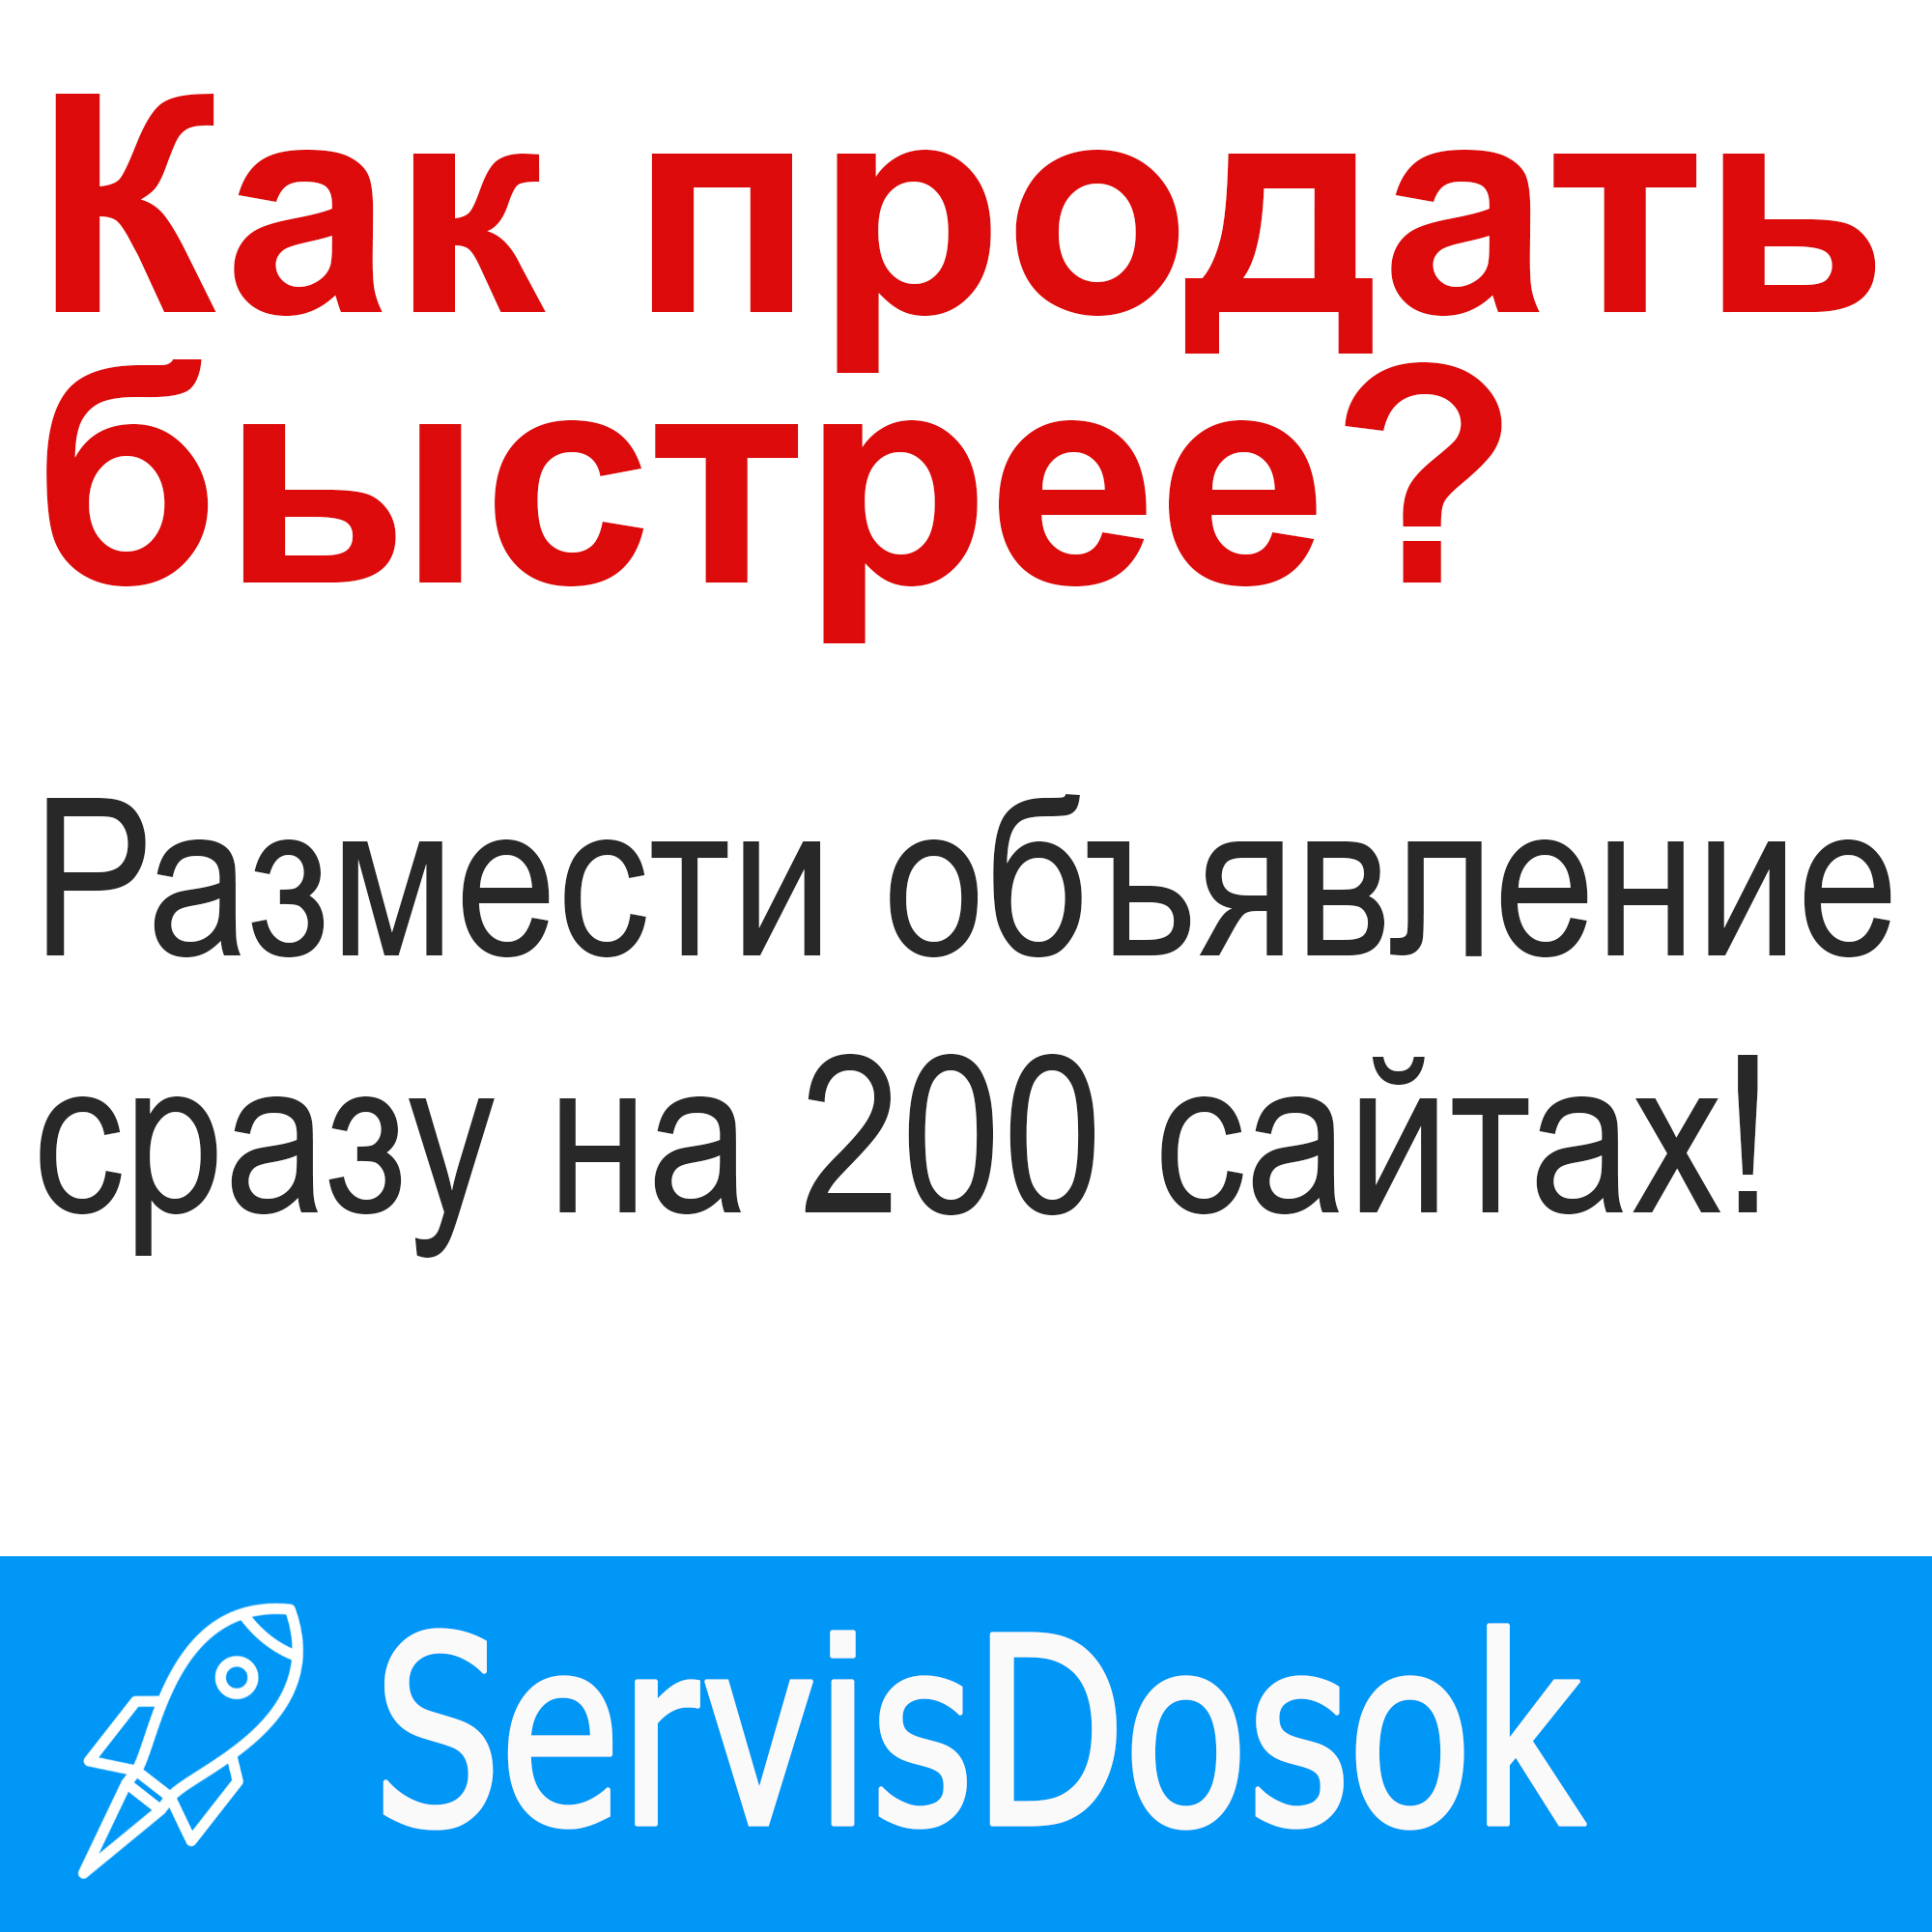 22498 Рассылка объявлений на 200 ТОП досок Украины, любой регион